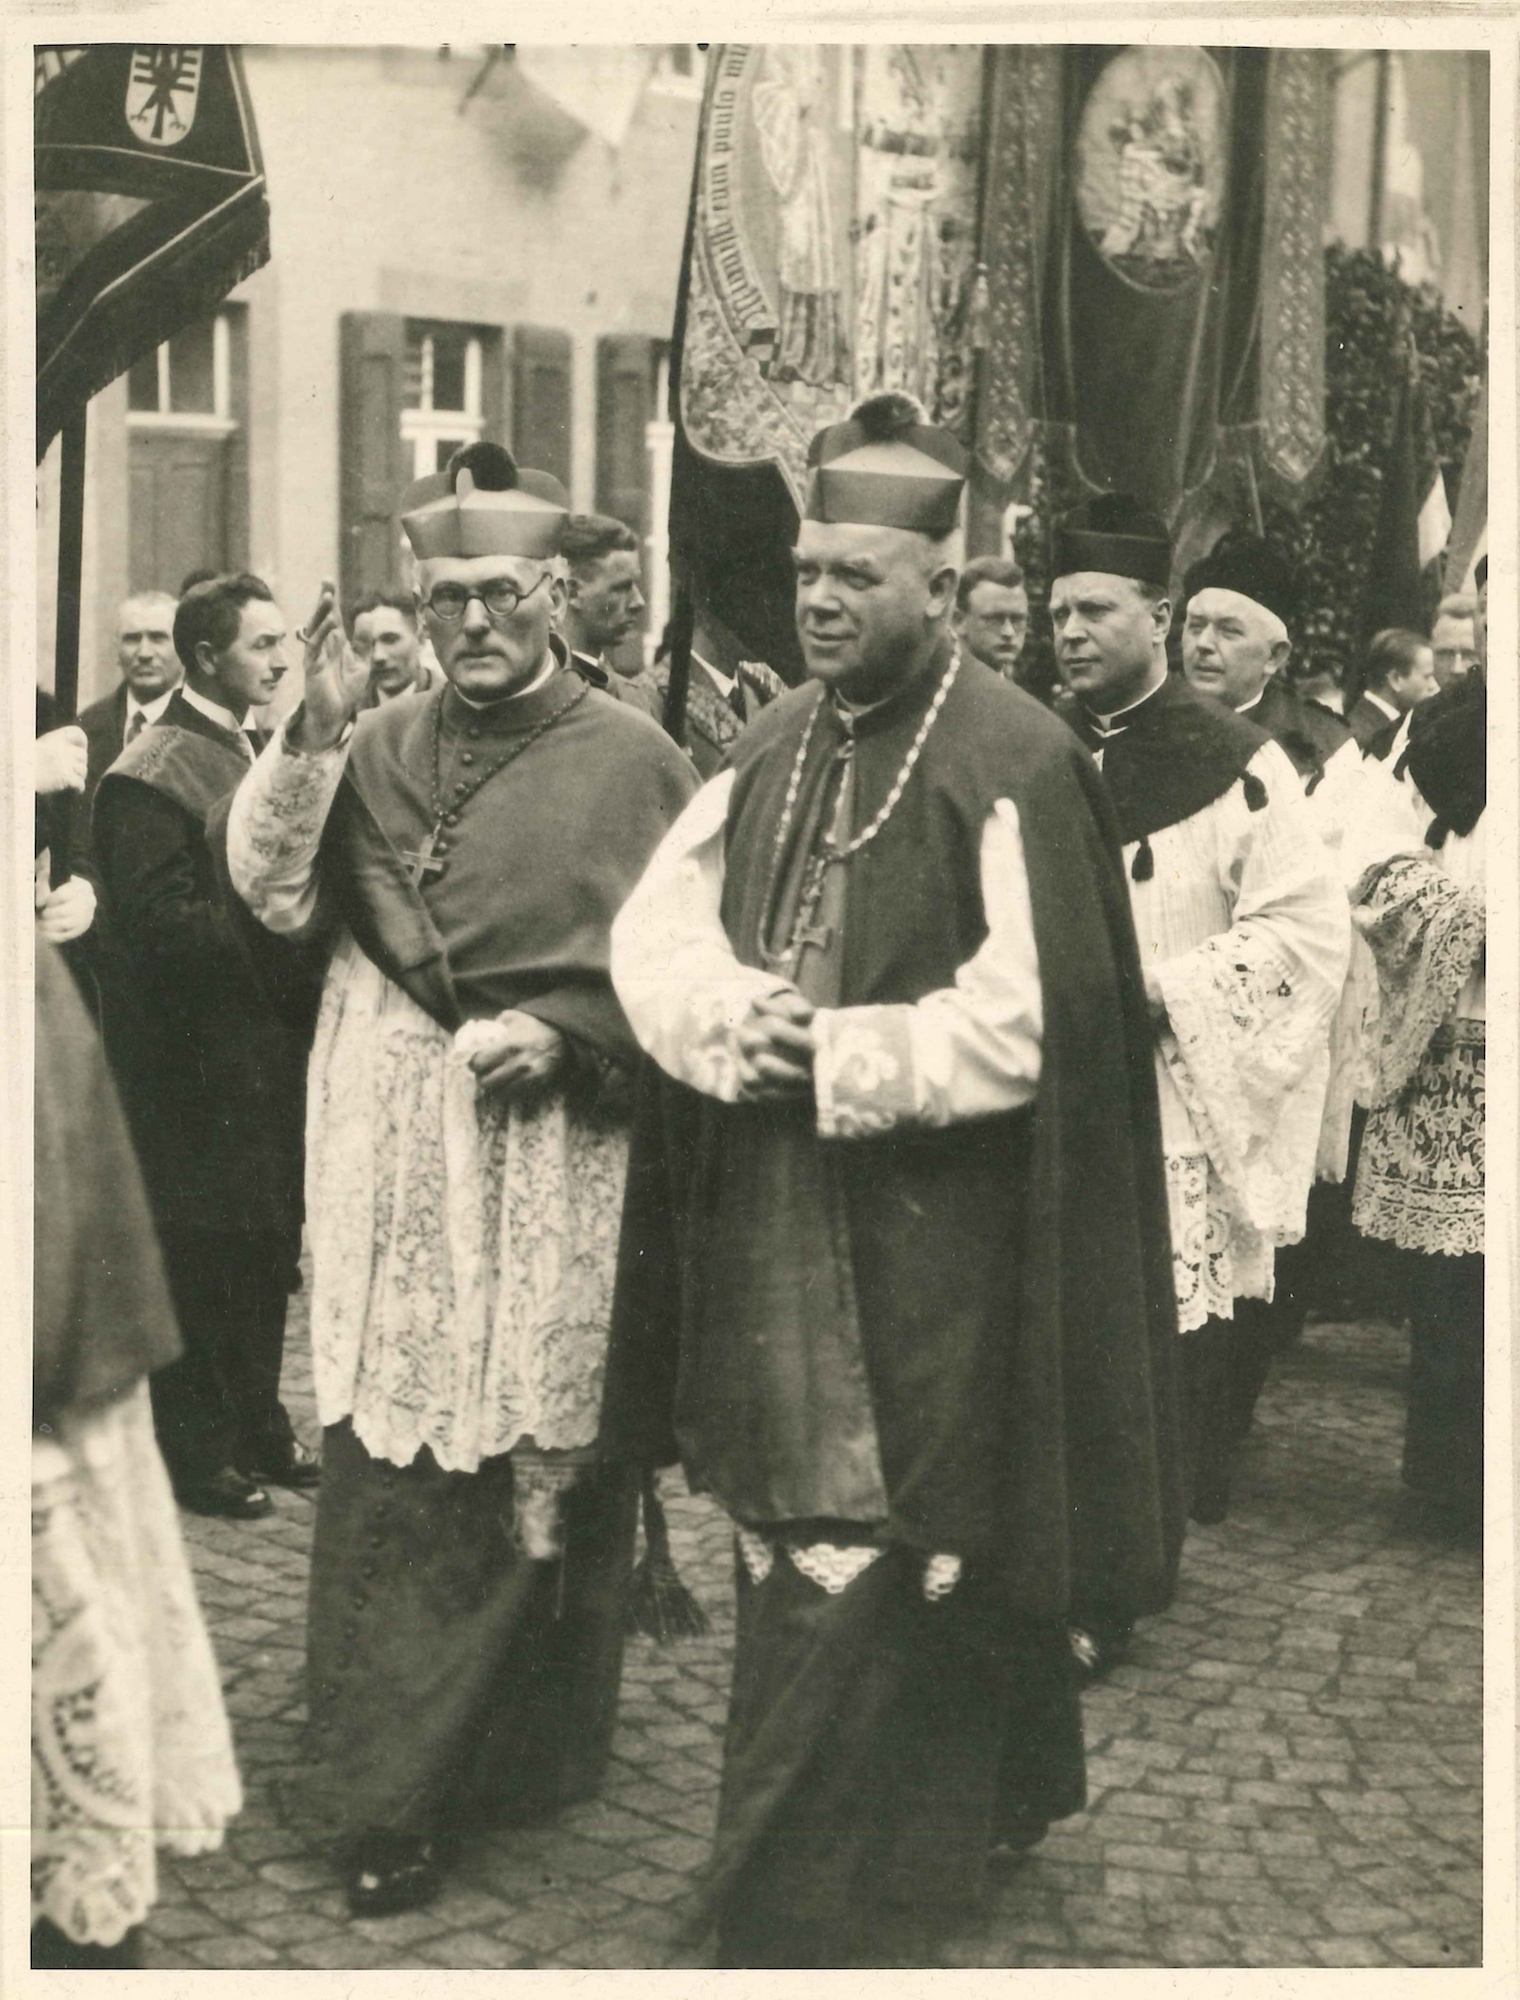 Bischof Joseph Vogt und sein langjähriger Wegbegleiter Hermann Joseph Sträter, undatiert. (c) Bischöfliches Diözesanarchiv Aachen